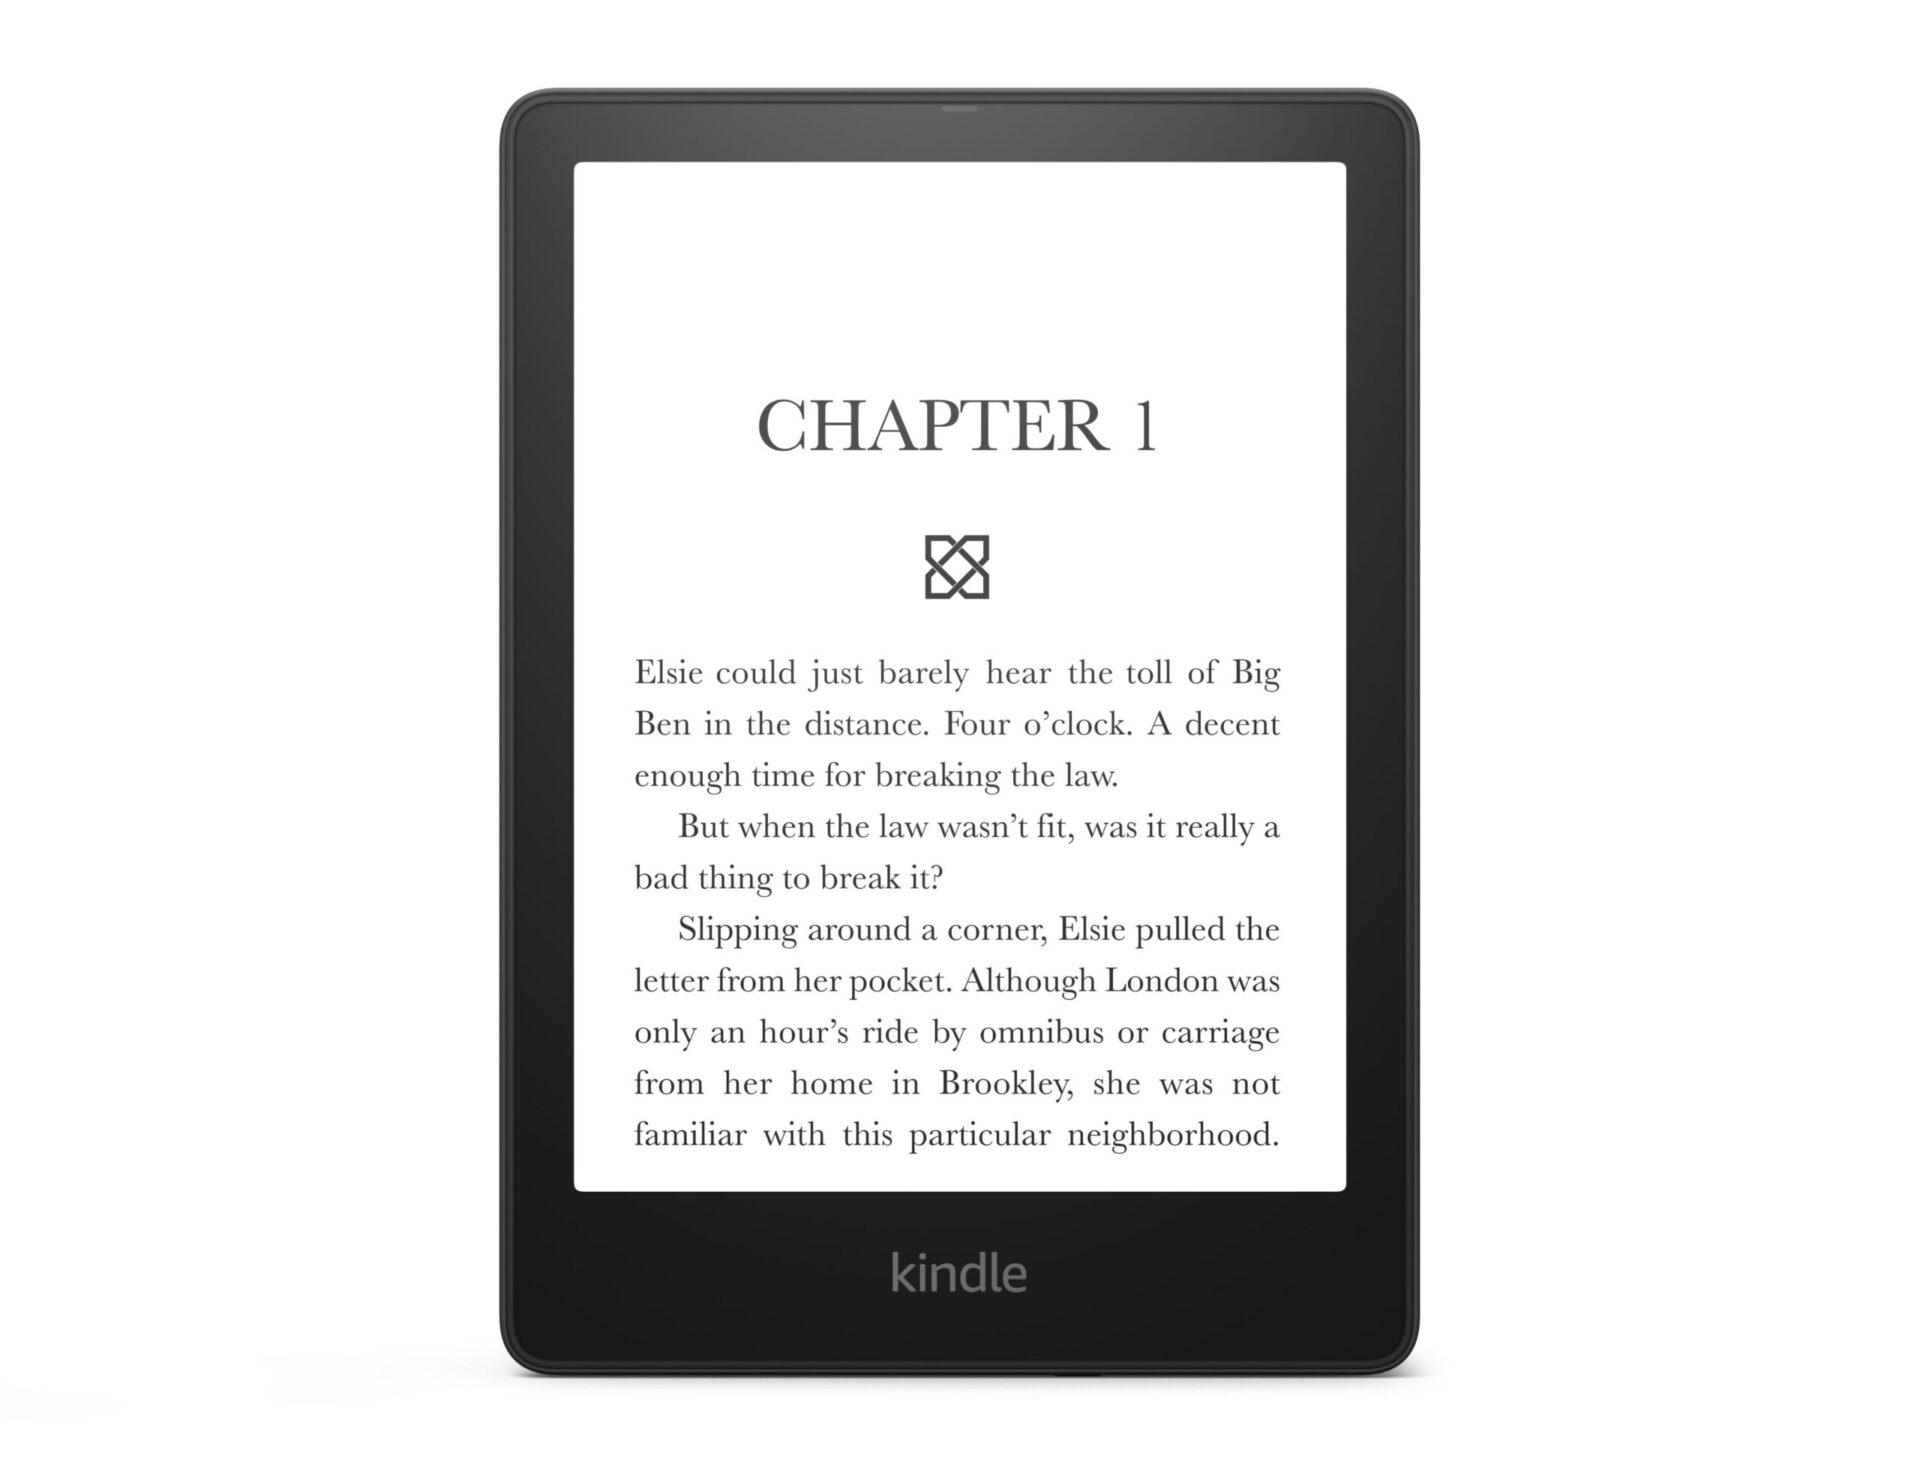 Kindle Paperwhite là một thiết bị đọc sách hấp dẫn với màn hình chất lượng cao và không gây mỏi mắt. Bạn có thể tìm thấy nhiều cuốn sách phong phú trong thư viện của Kindle và cảm nhận sự thoải mái khi đọc sách. Hãy xem hình ảnh Kindle Paperwhite 5 để cảm nhận được sự khác biệt mà nó mang lại.